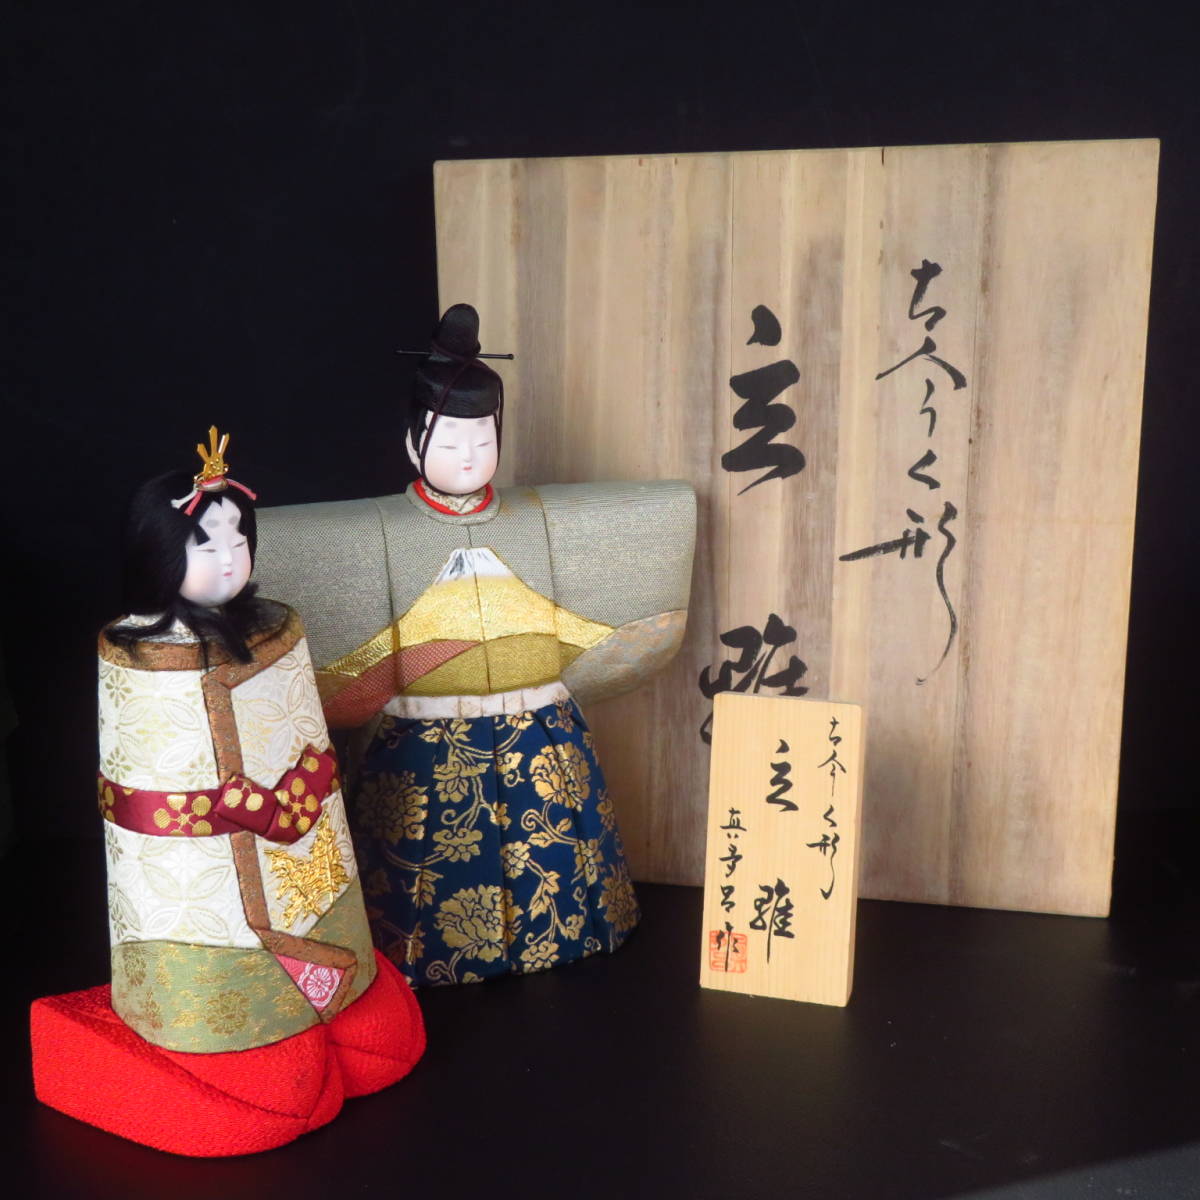 Mataro 制作的古代和现代娃娃站立 Hina Kimekomi 娃娃 Hina 娃娃 Hina 娃娃日本娃娃 Mataro 娃娃 Godairi-sama Hina-sama 艺术家签名同盒, 季节, 一年一次的活动, 娃娃节, 雏娃娃